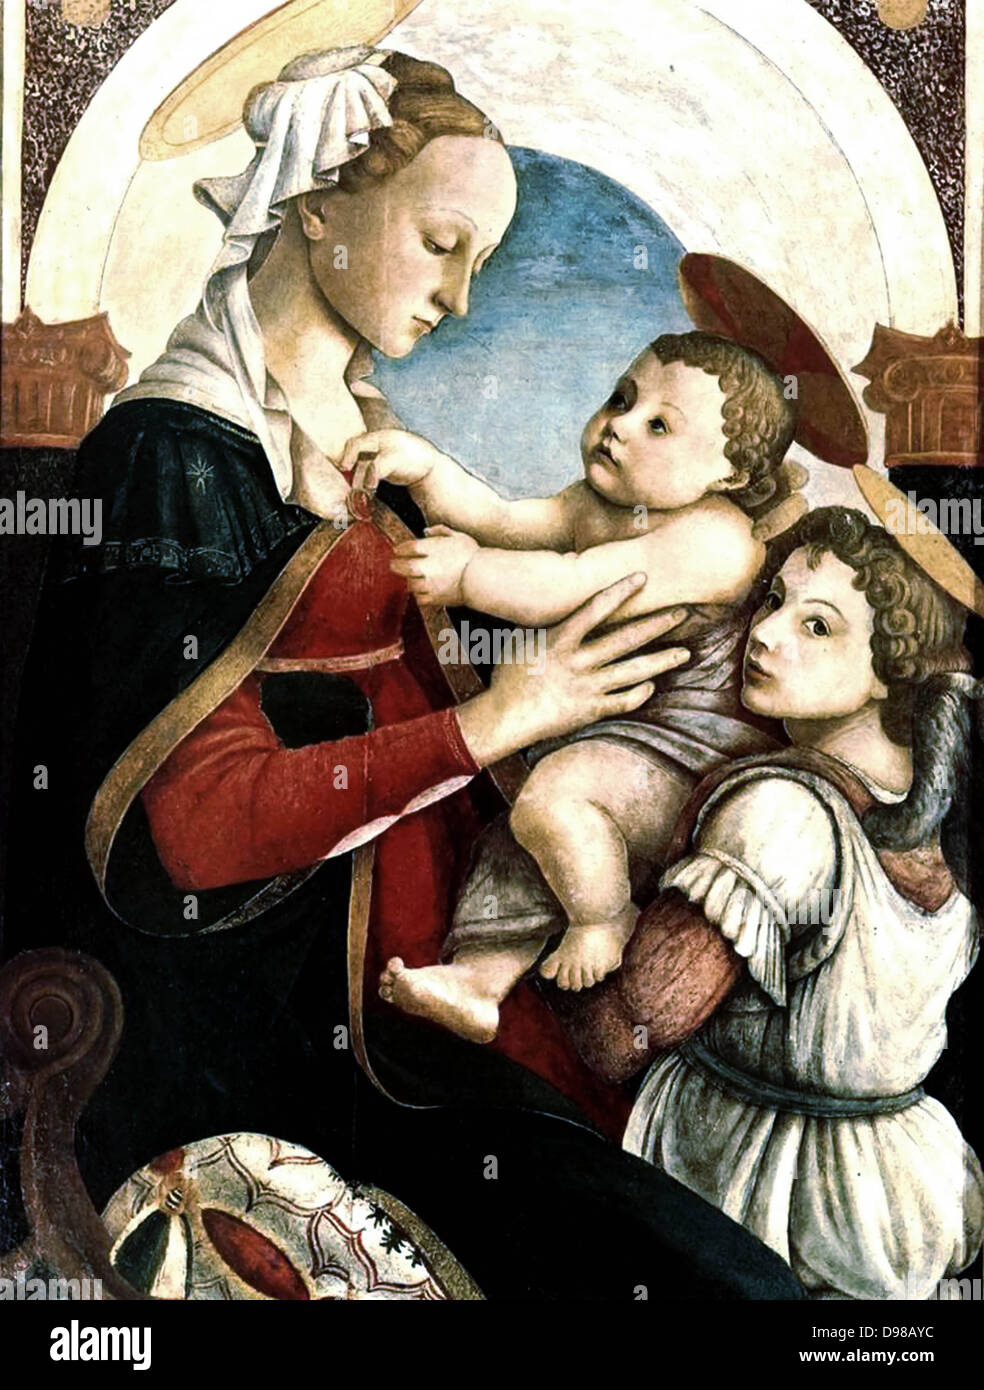 Egli Madonna con Bambino e un angelo è una pittura del Rinascimento italiano pittore Sandro Botticelli, c. 1465-1467. Esso è alloggiato in Spedale degli Innocenti di Firenze. Foto Stock